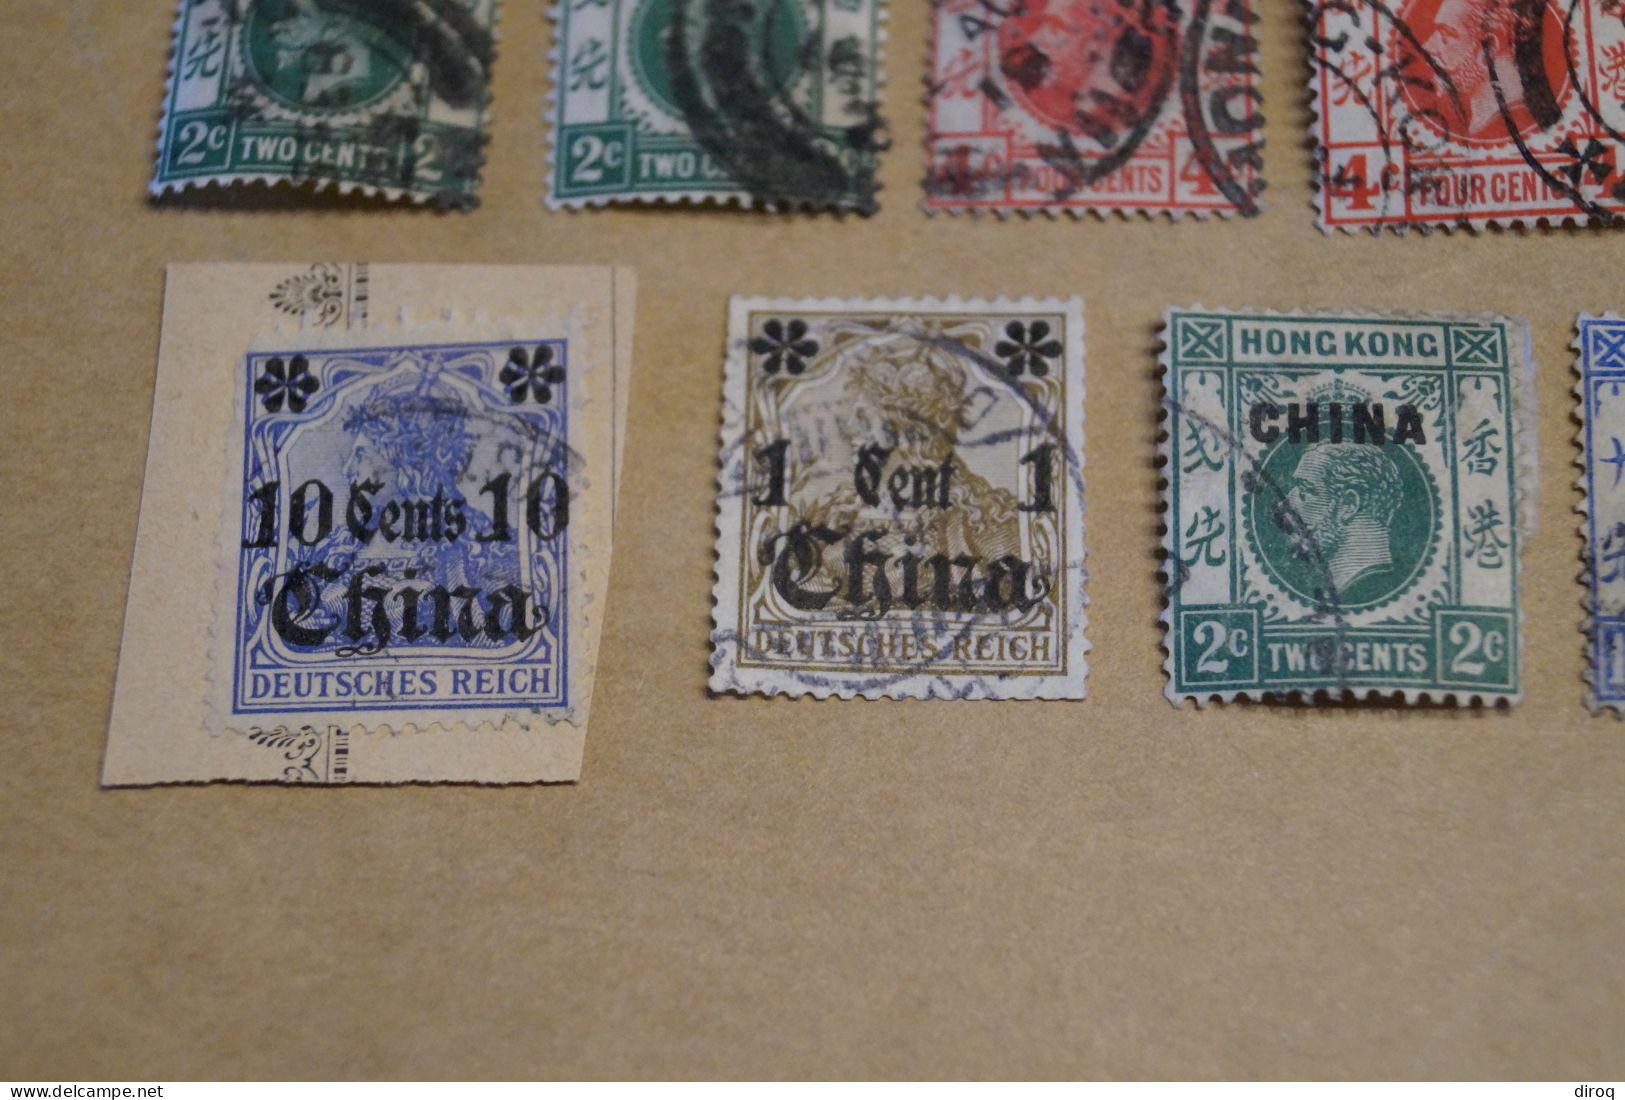 Chine,Chines,lot de 21 timbres oblitérés,empire et colonies pour collection,collector